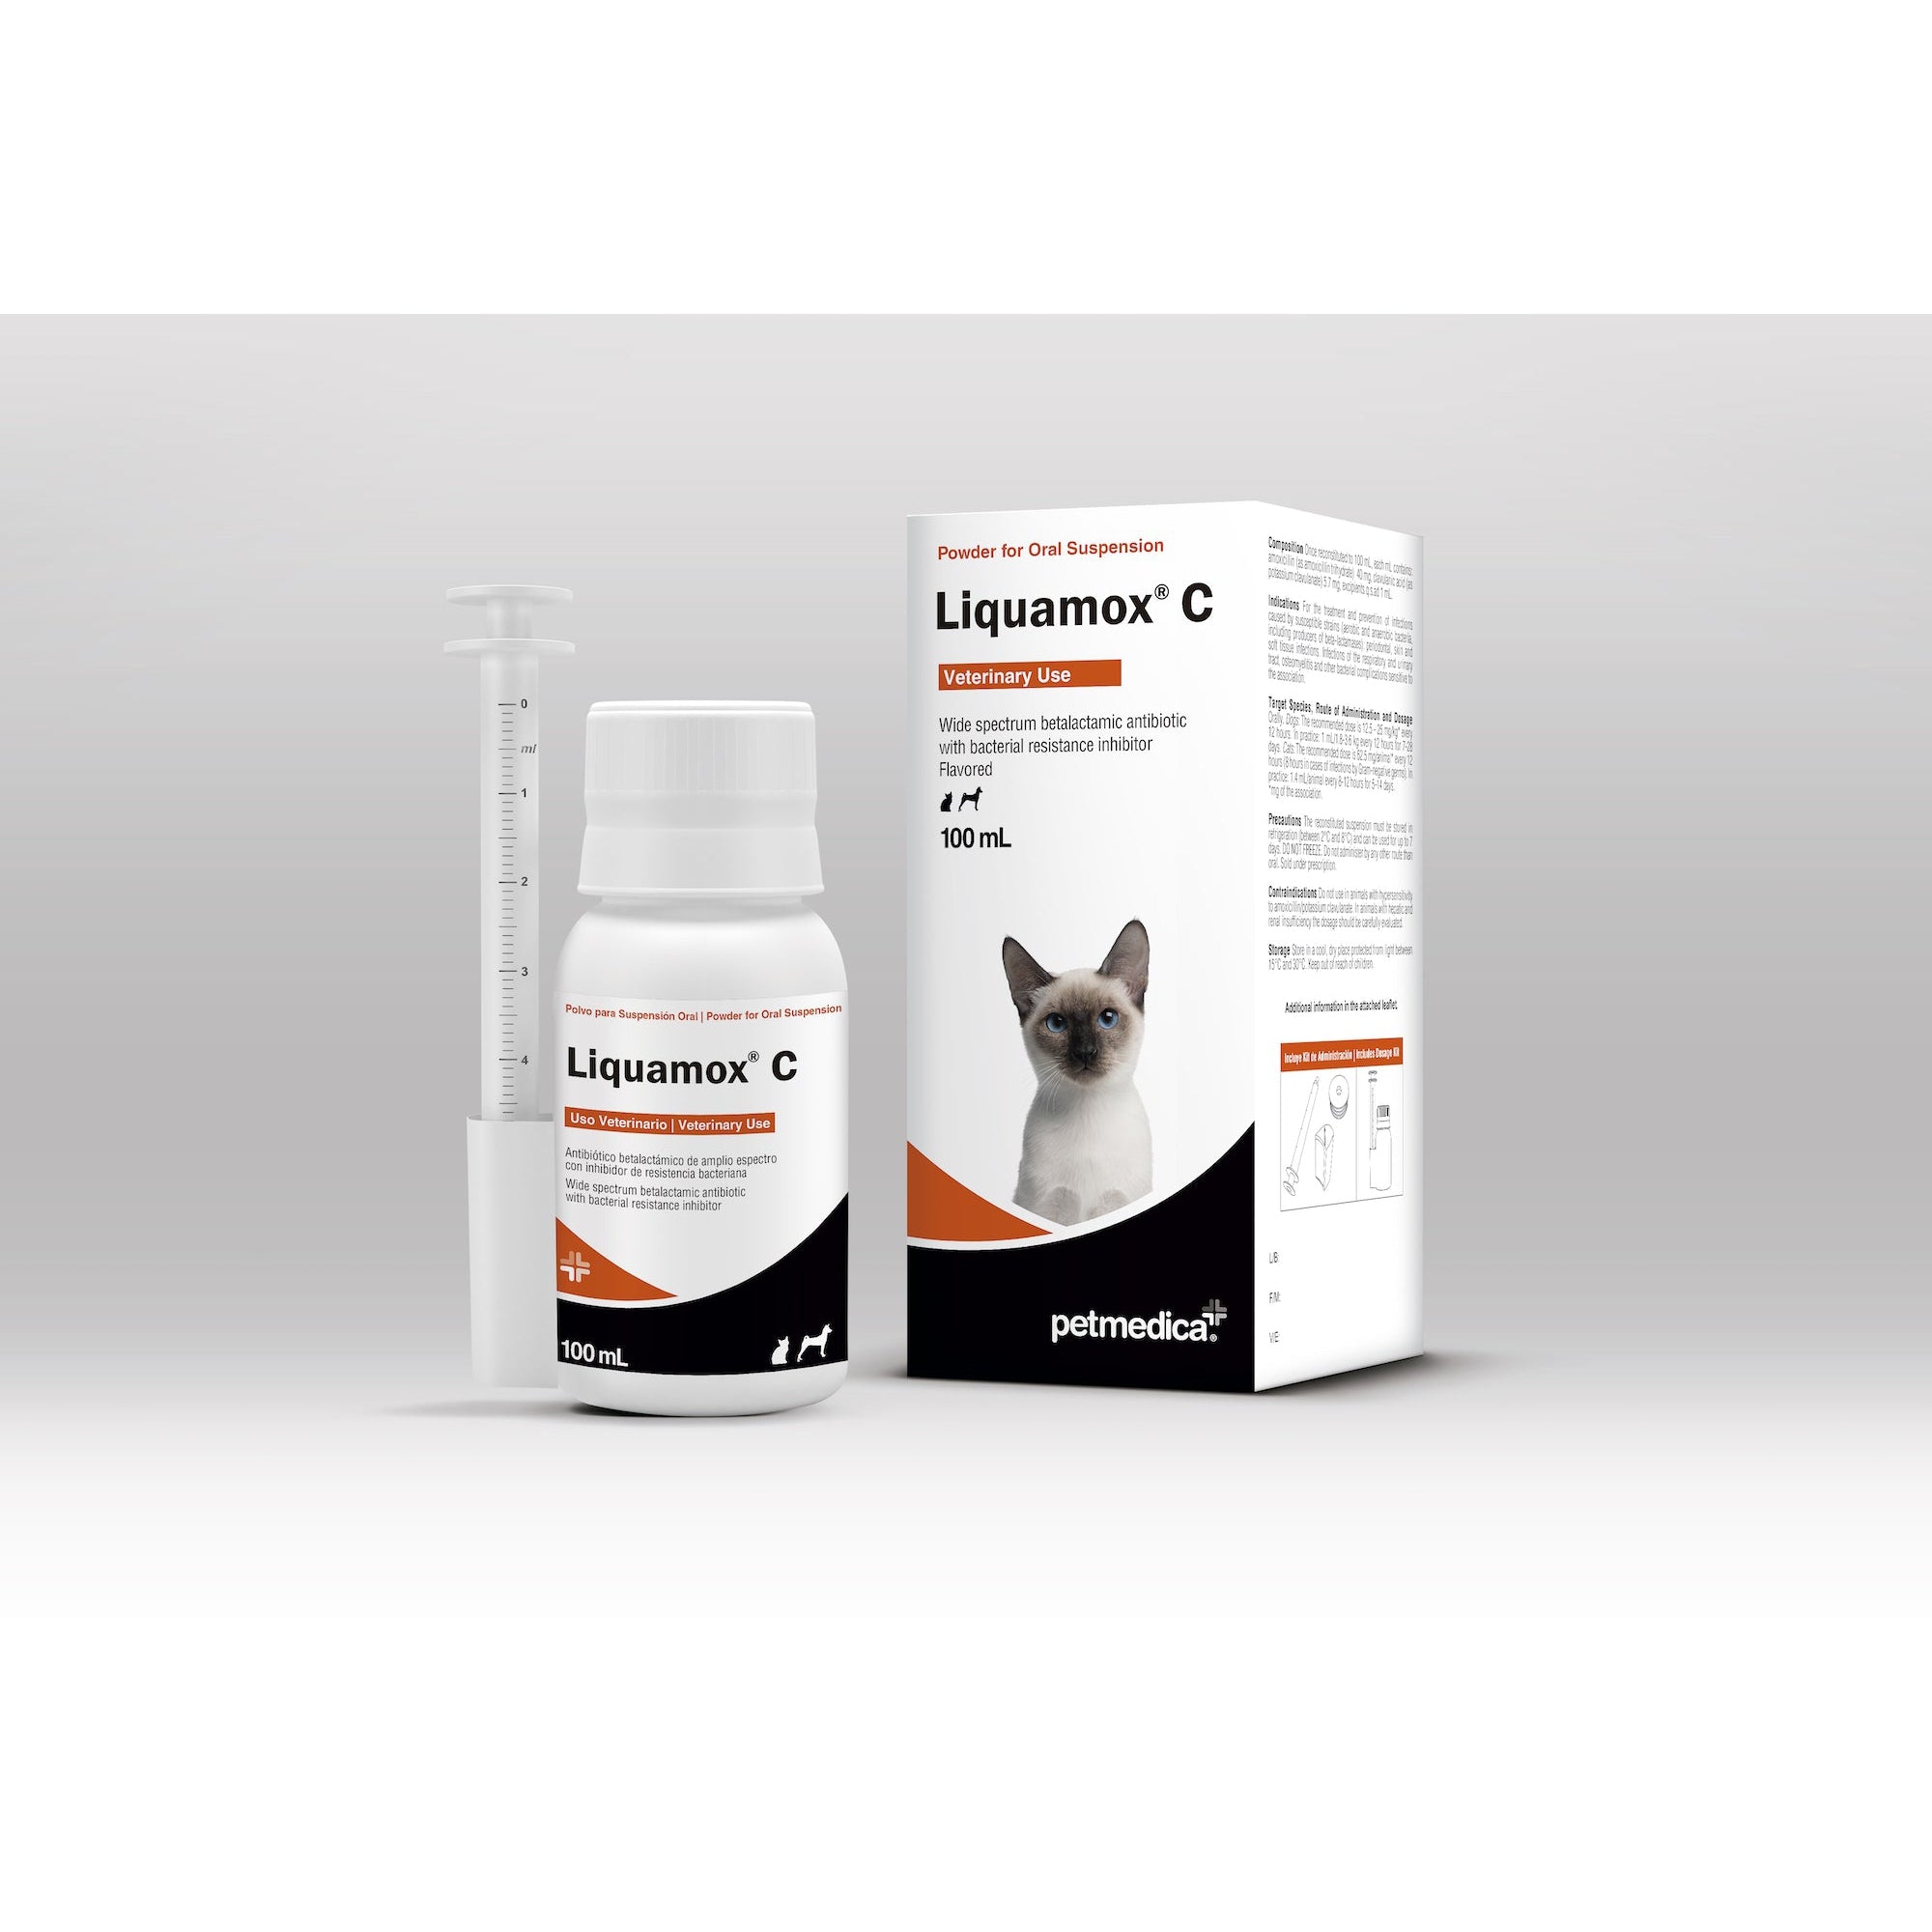 Liquamox ® C